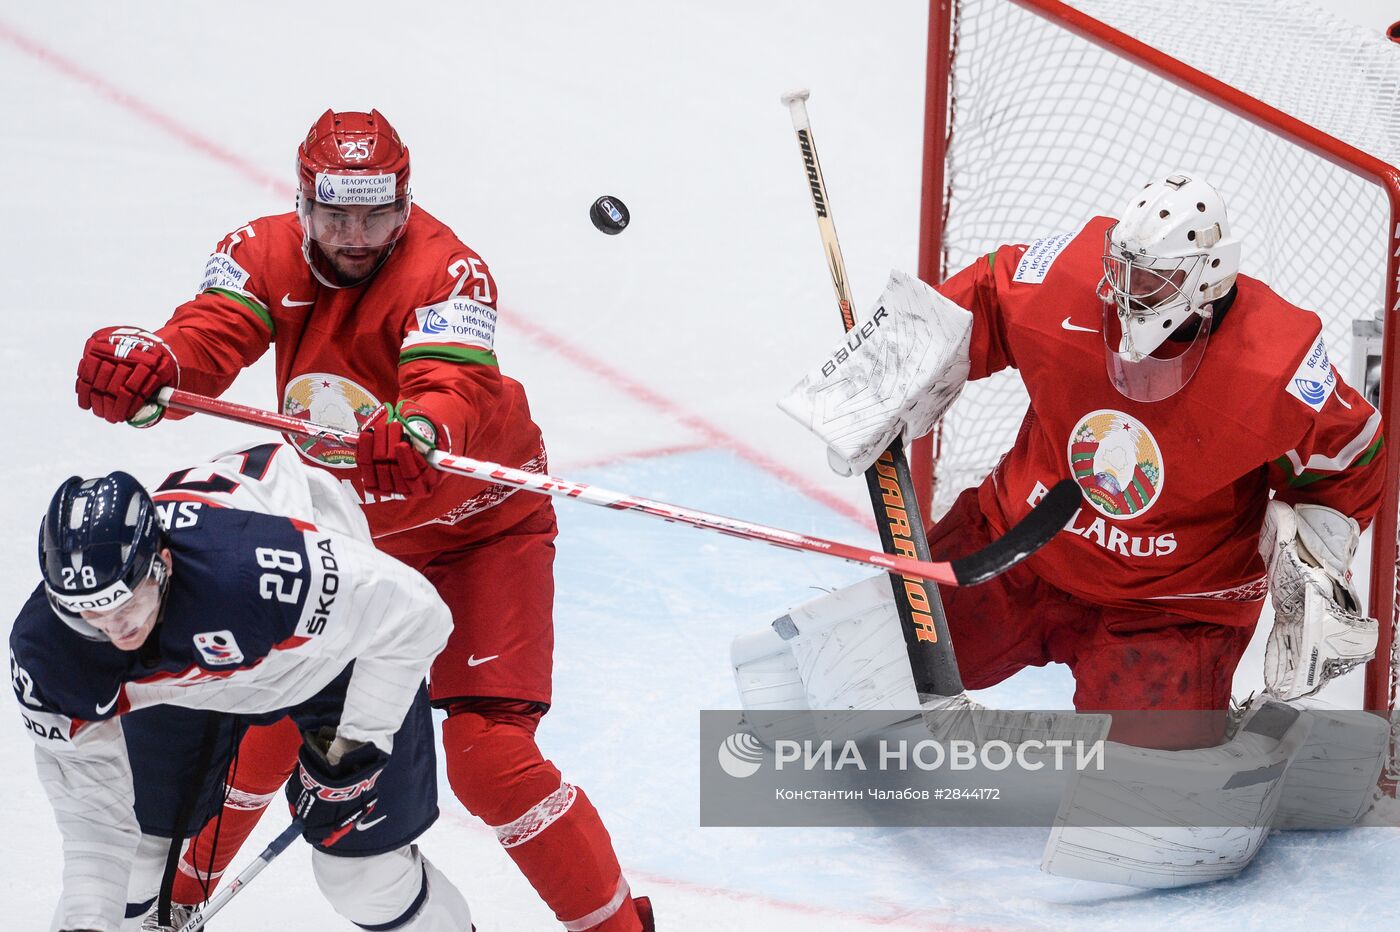 Хоккей. Чемпионат мира. Матч Словакия - Белоруссия